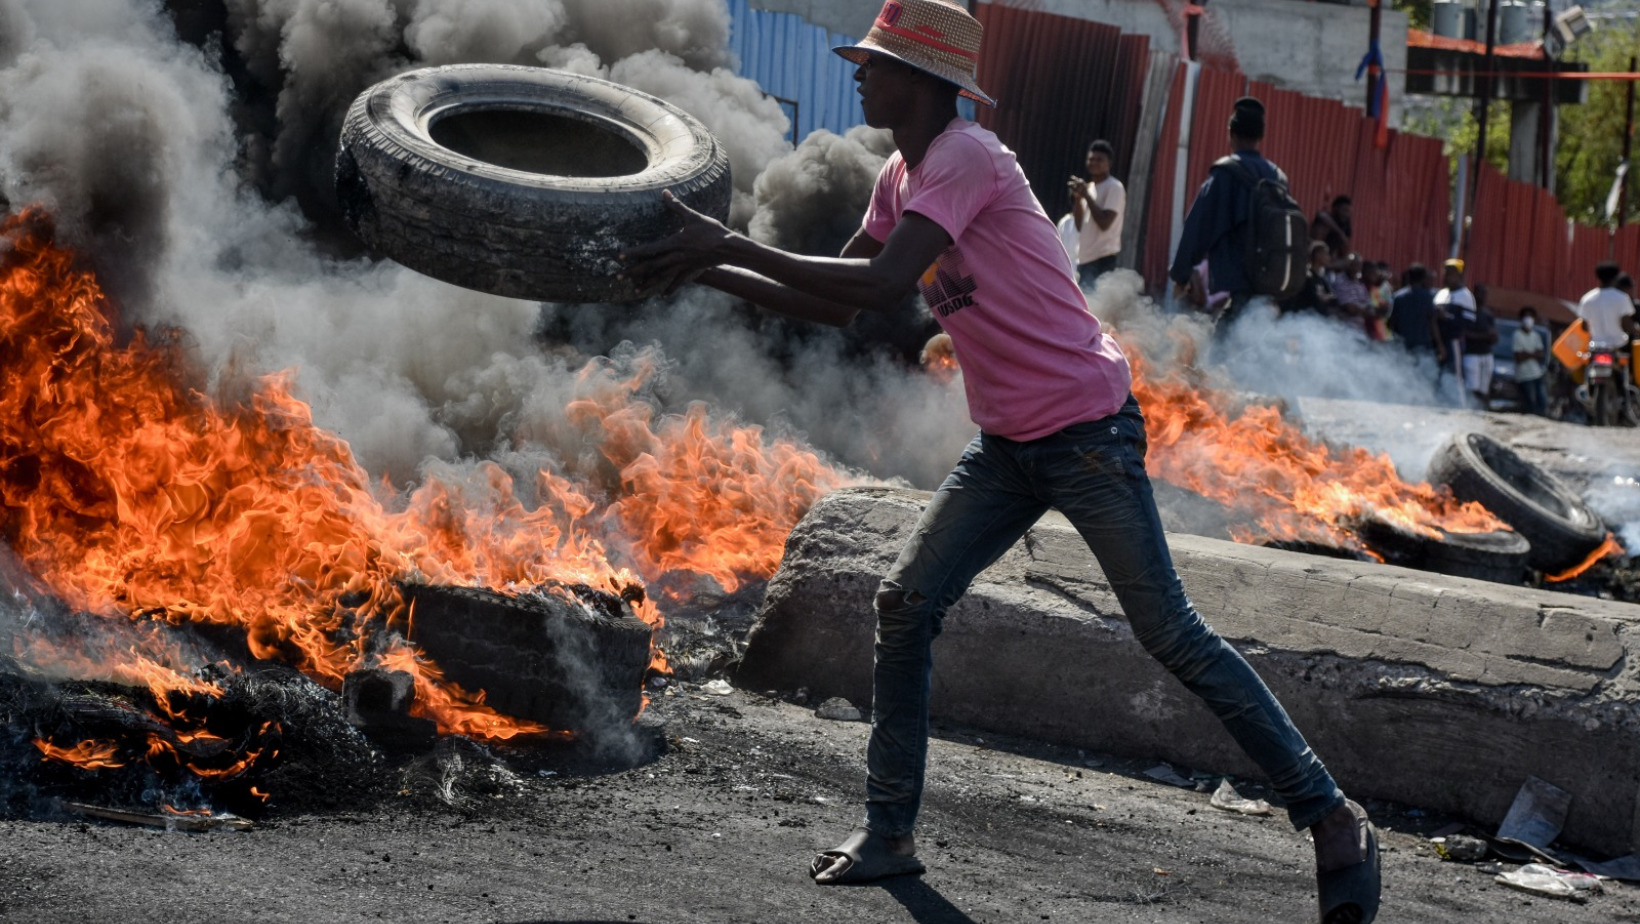 En Haití declaran toque de queda. (Foto: fuente externa)